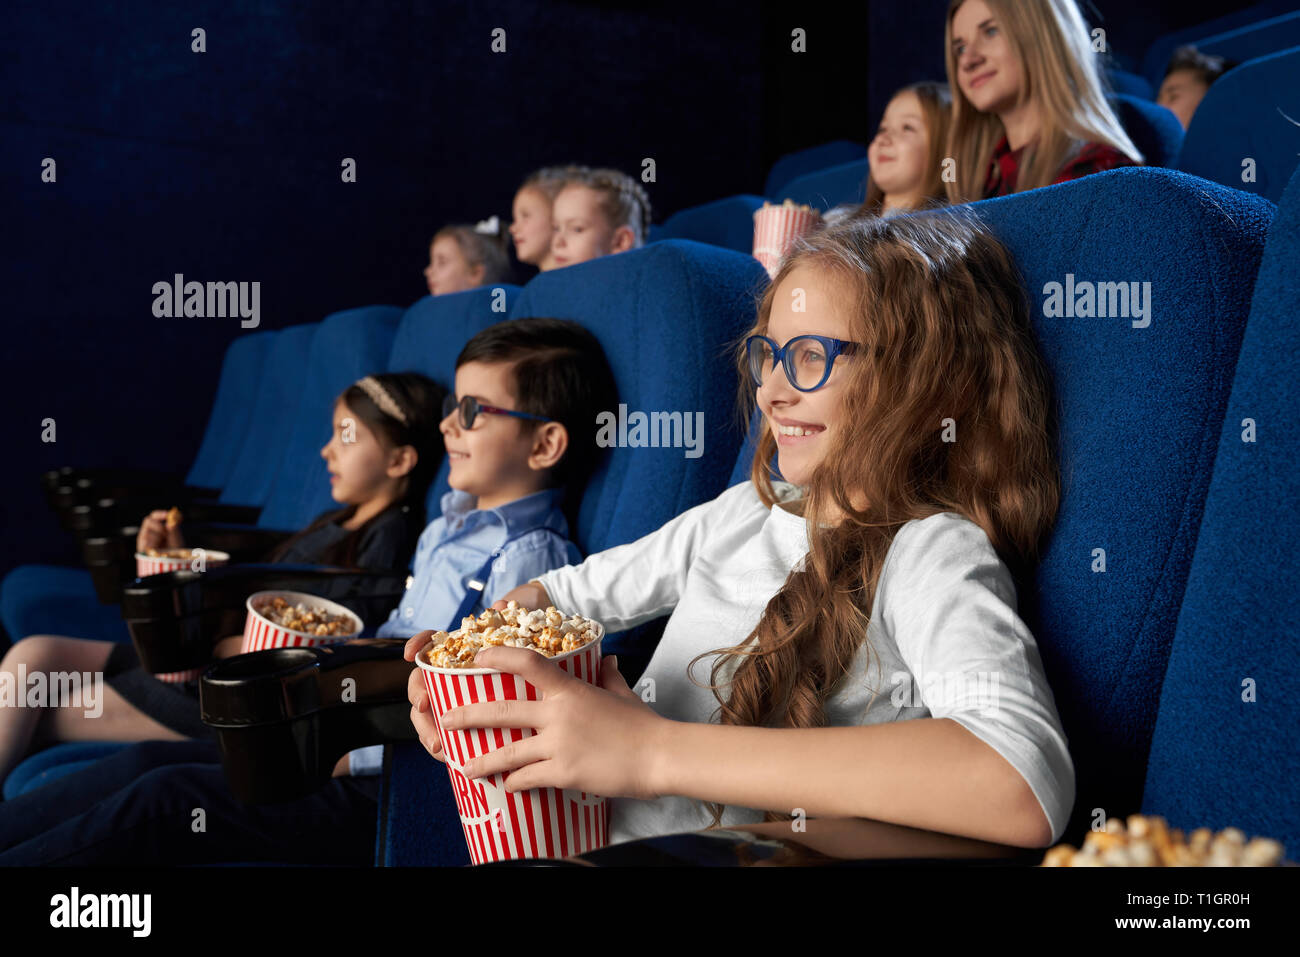 Heureux, joyeux enfants assis en bleu foncé, des fauteuils confortables dans le cinéma moderne théâtre, regarder la vidéo ou de dessin animé. Bénéficiant d'enfants, film, smiling holding seaux avec du maïs soufflé. Banque D'Images